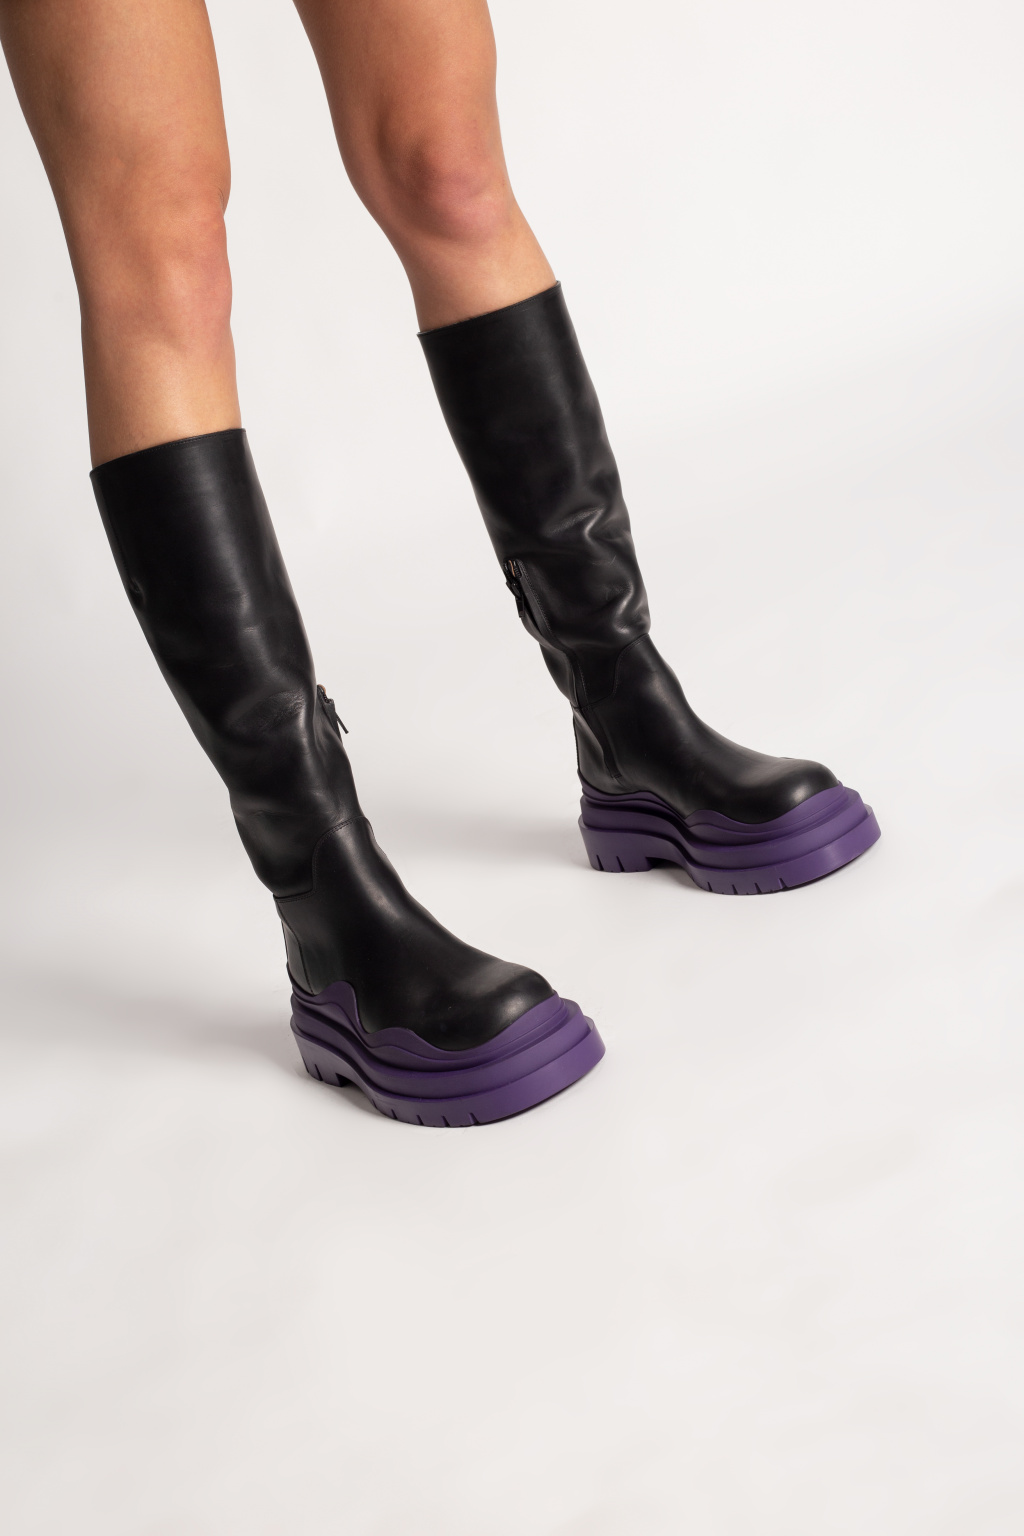 Bottega Veneta 'Tire' boots | Women's Shoes | Vitkac